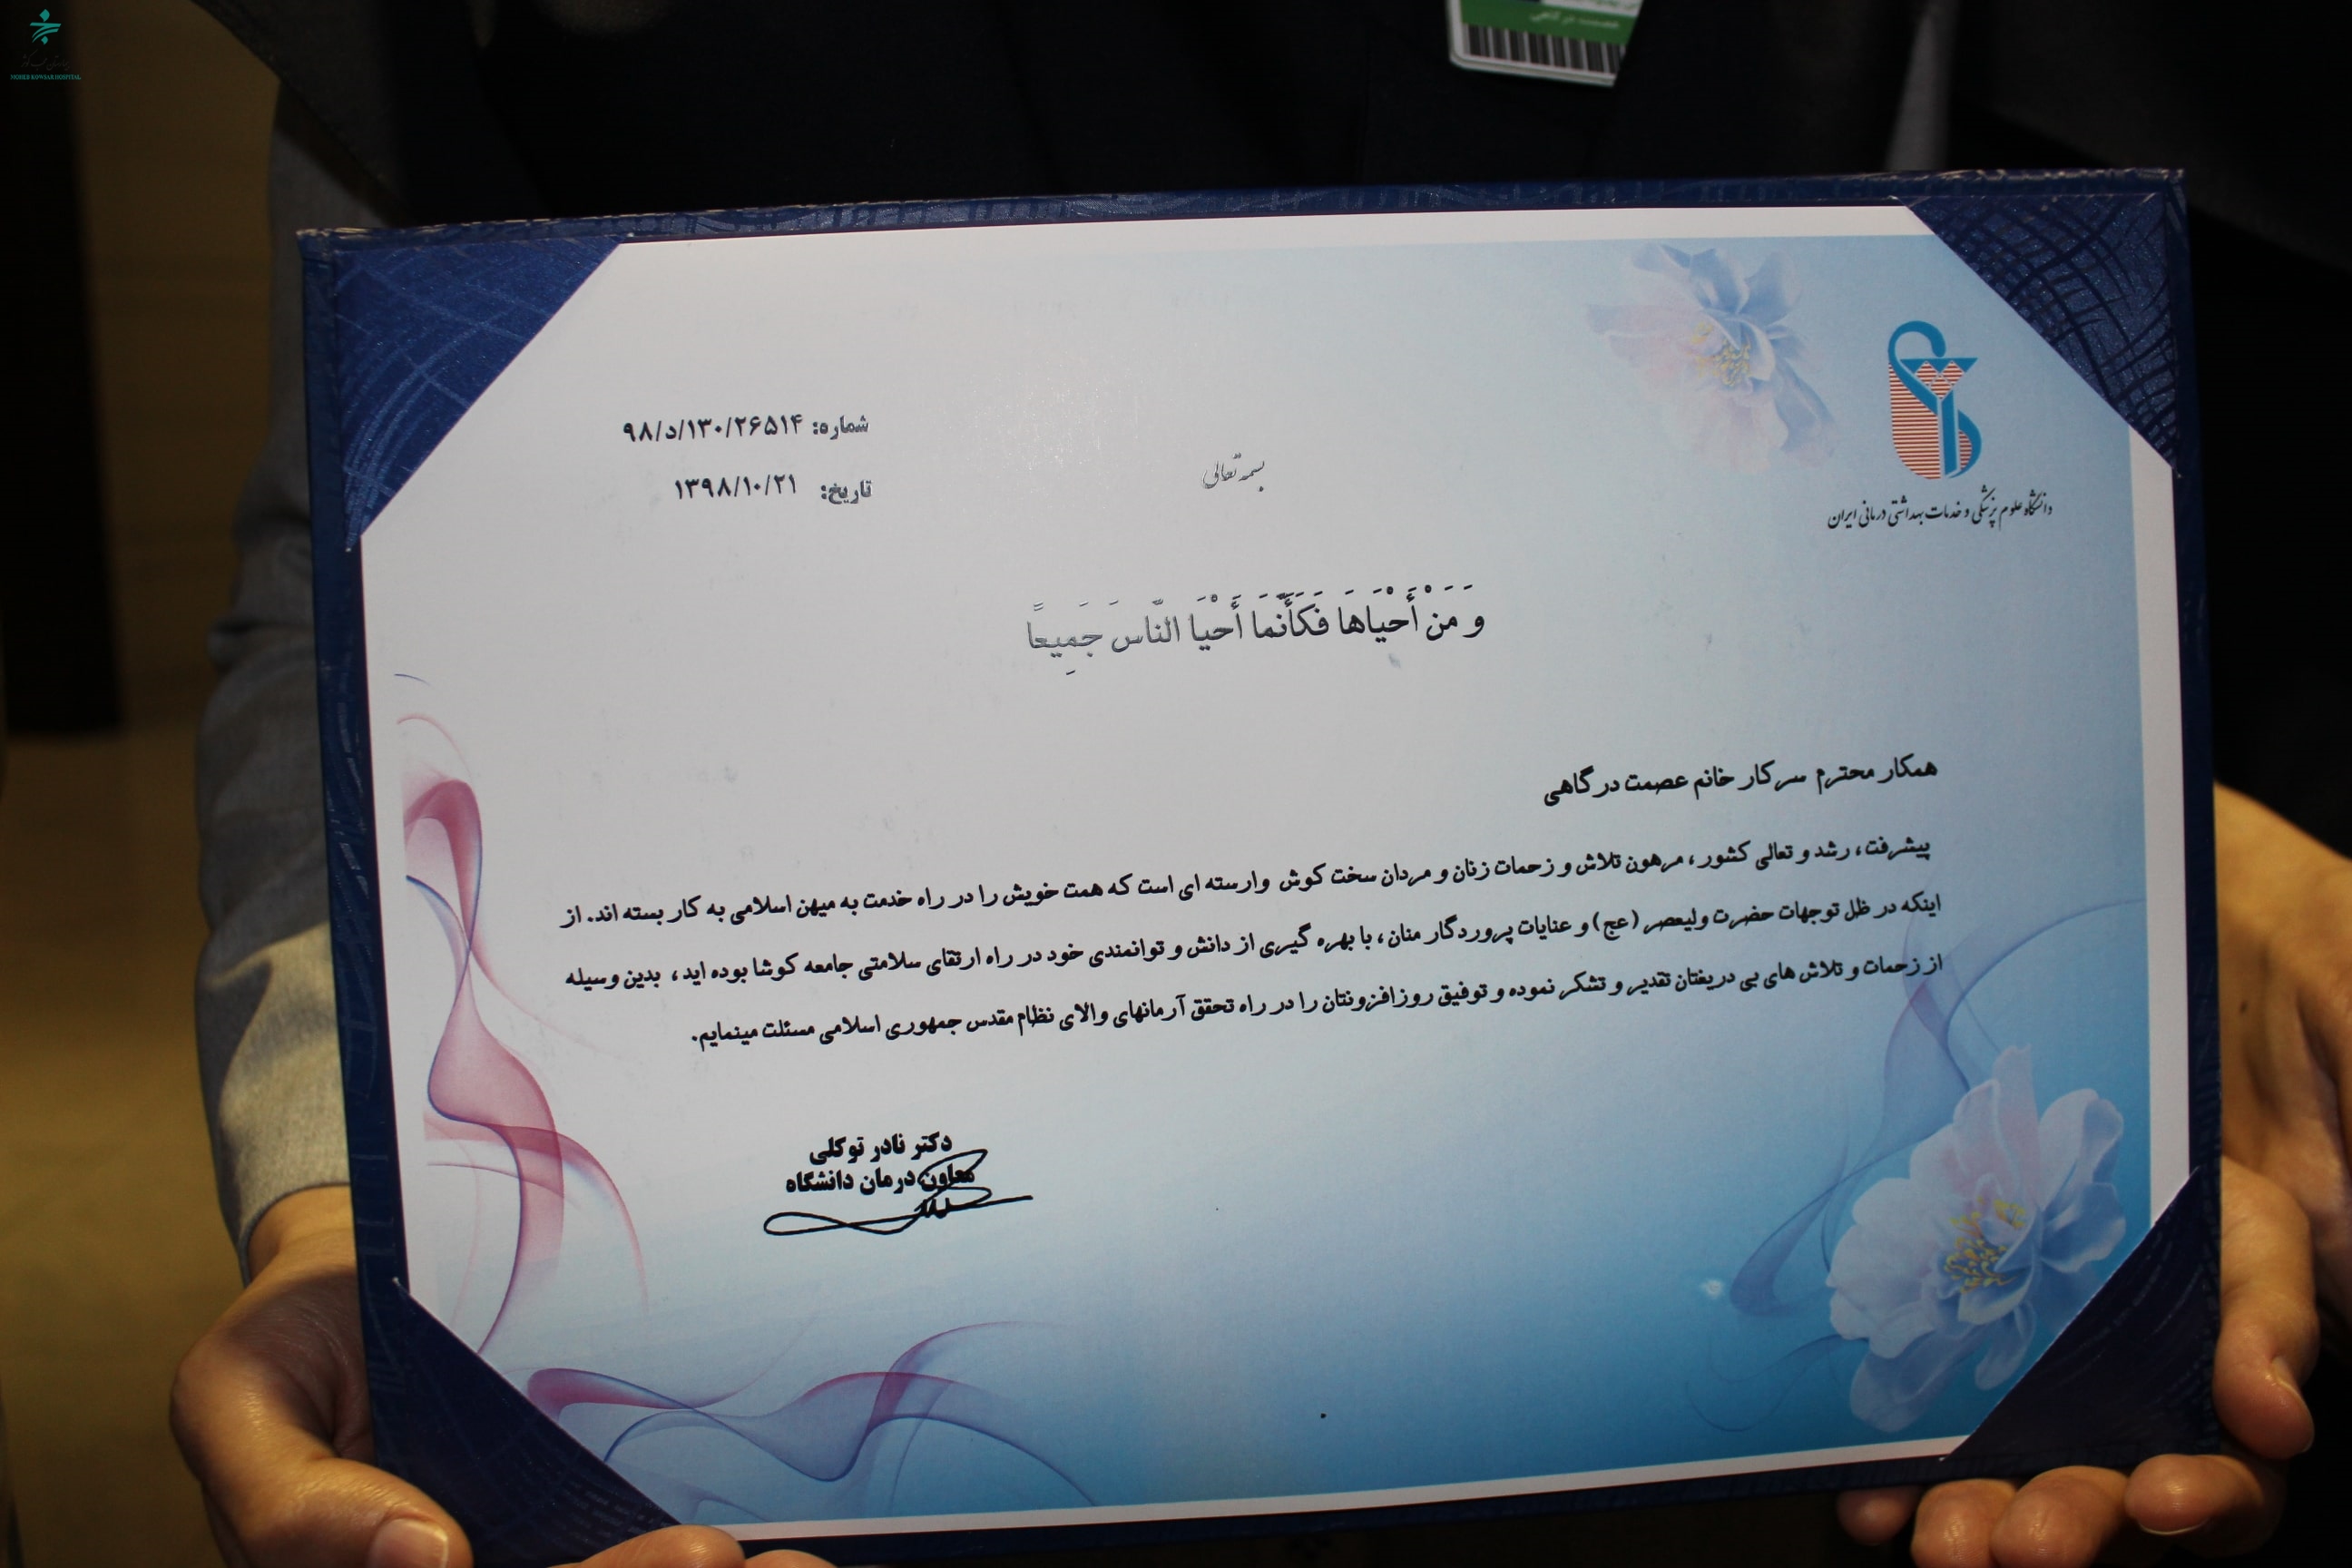 اهدای لوح تقدیر به بیمارستان محب کوثر در حوزه ایمنی بیمار توسط معاونت درمان دانشگاه علوم پزشکی ایران 3